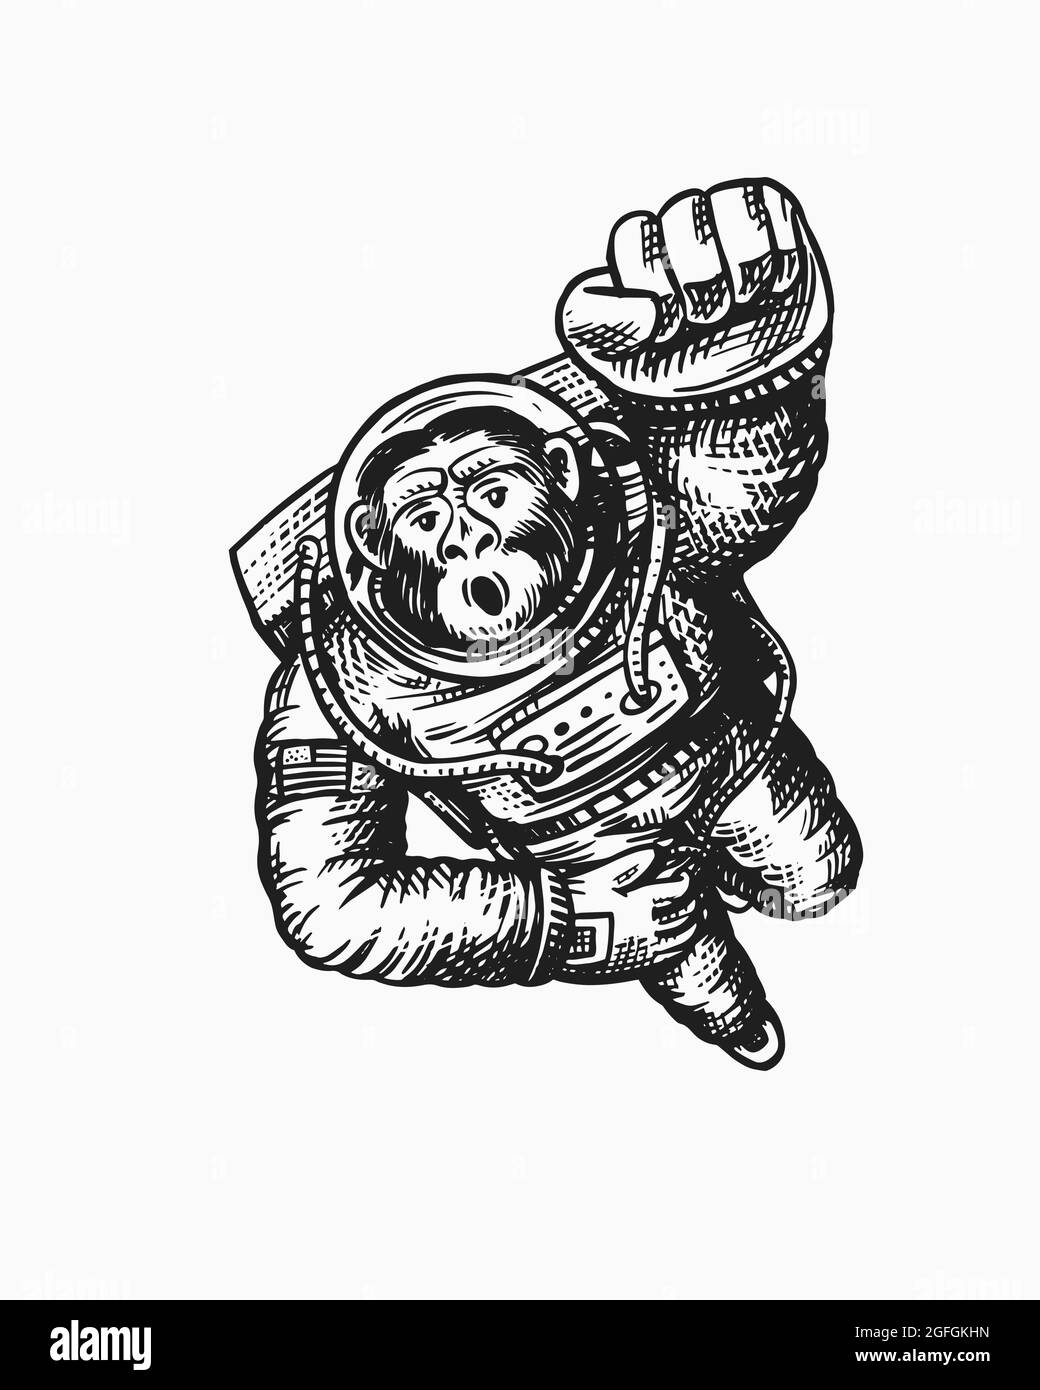 El Astronauta Mono Es Un Símbolo De Ingenio, Aventura Y Coraje. Esta  Ilustración Representa La Búsqueda De Un Simio Para Explorar La Frontera  Final, Trascendiendo Los Límites De Lo Que Se Creía